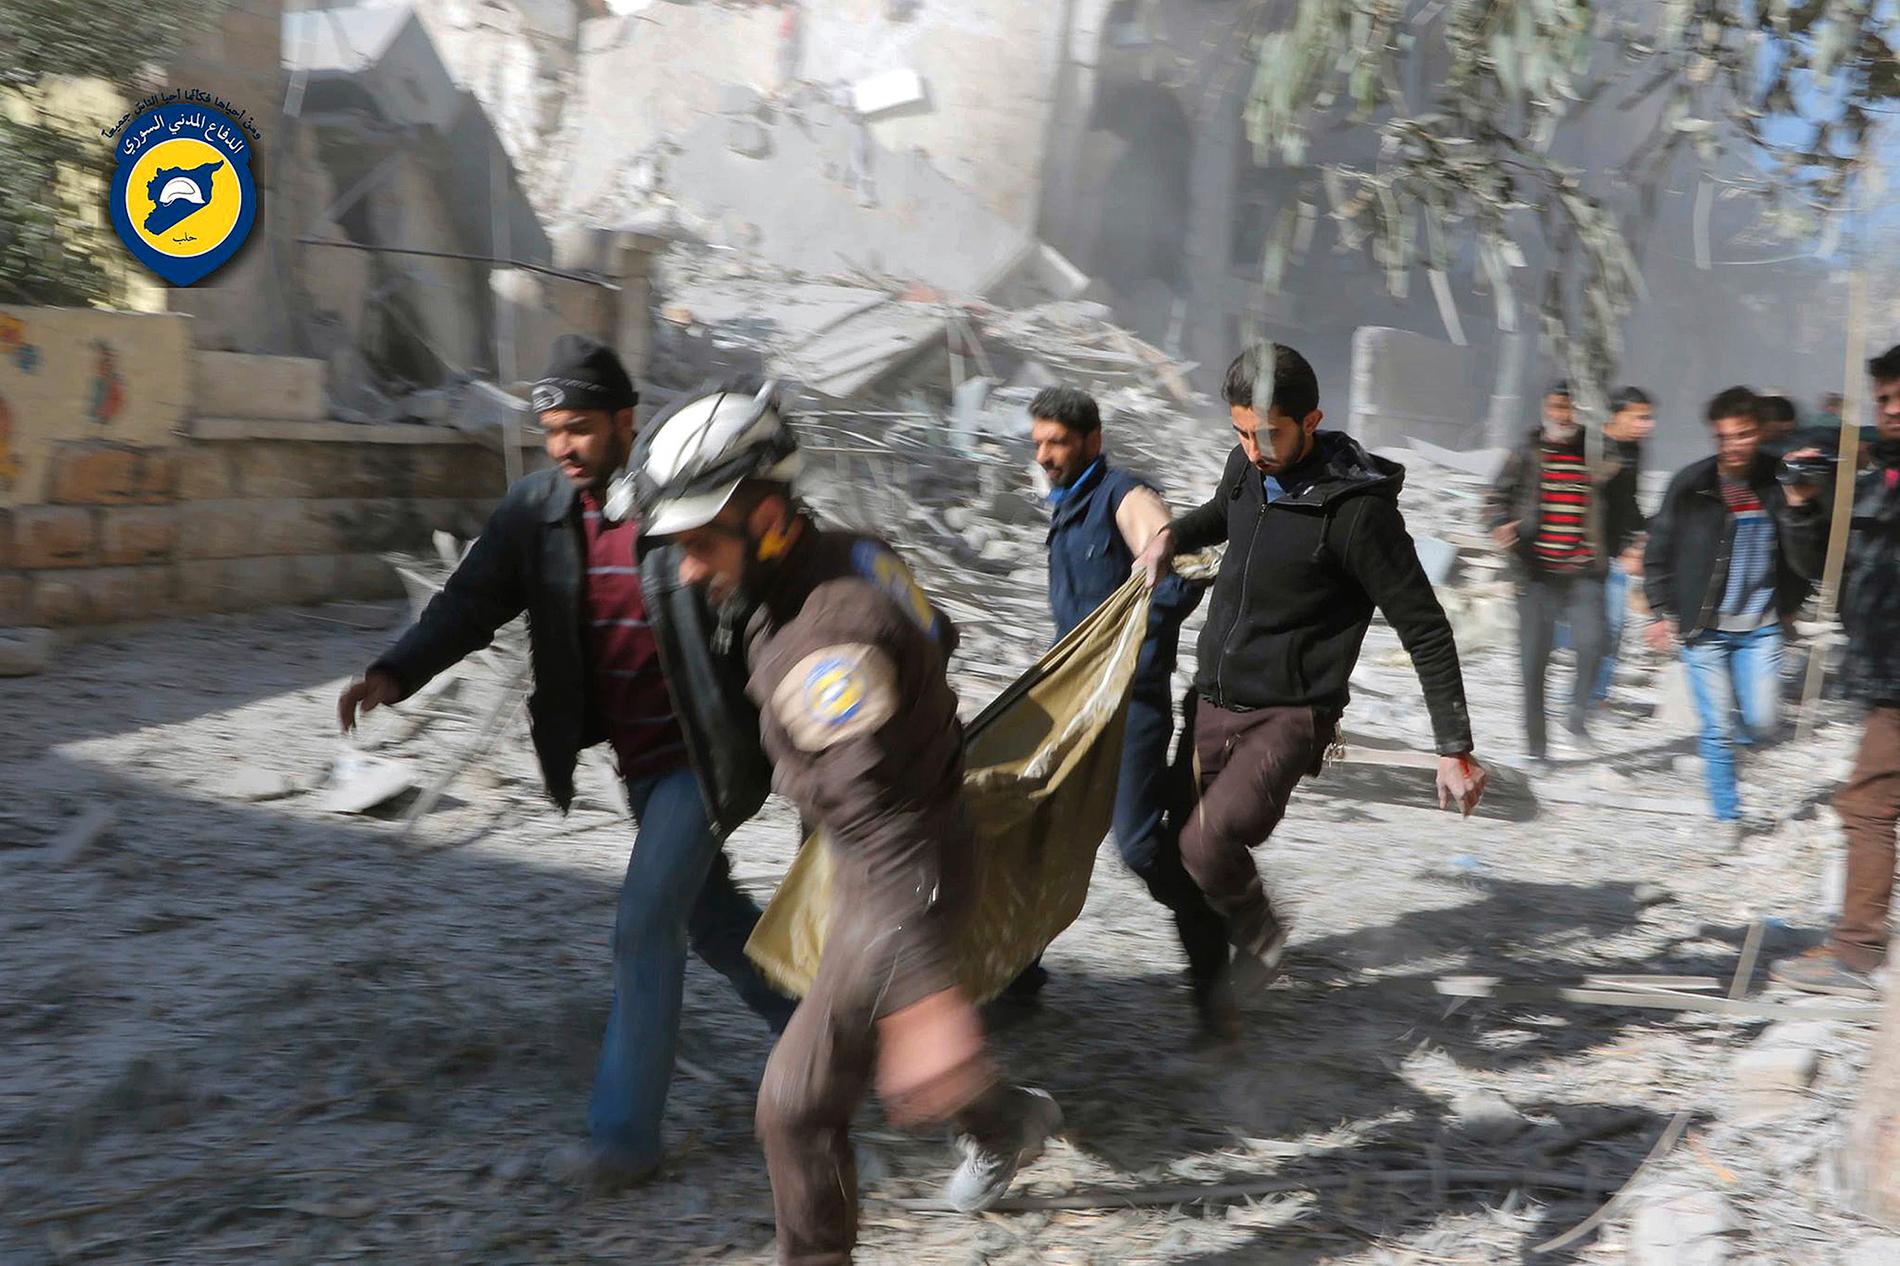 Ett offer för bombningarna i Aleppo flyttas. Bilden har gjorts tillgänglig av den syriska hjälporganisationen "White Helmets".